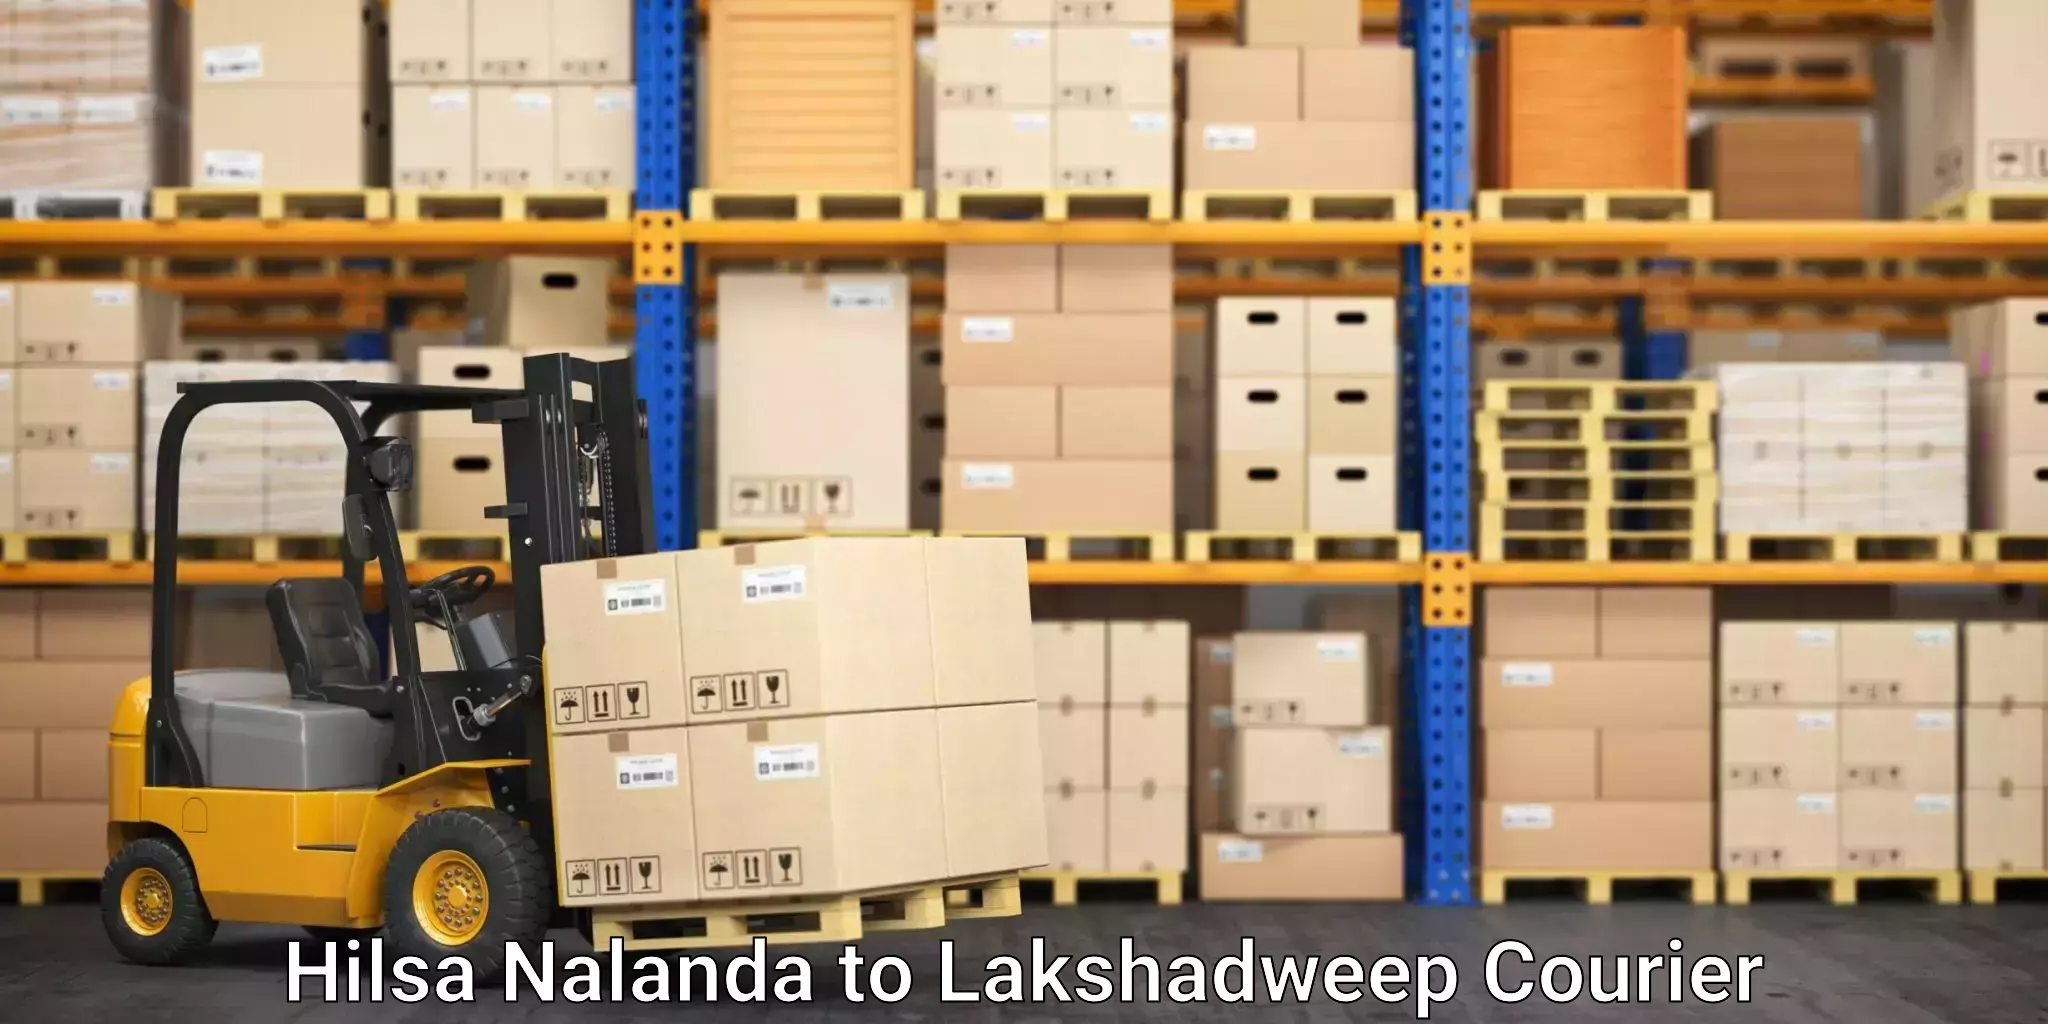 Expert packing and moving Hilsa Nalanda to Lakshadweep